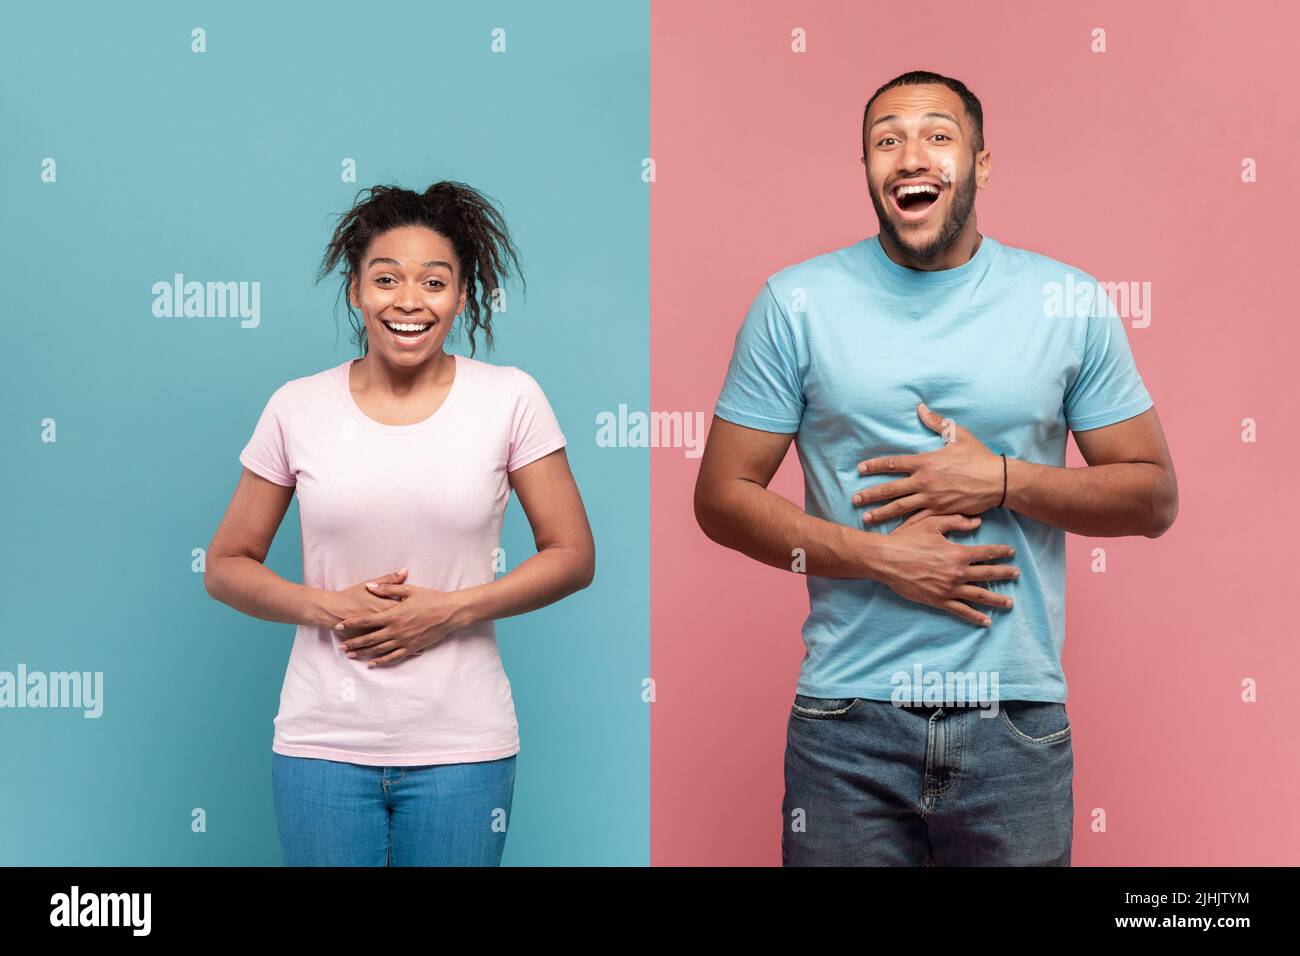 Hilarante femme noire et homme touchant les estomacs de rire, ne peut pas arrêter de rire, fond rose et bleu Banque D'Images